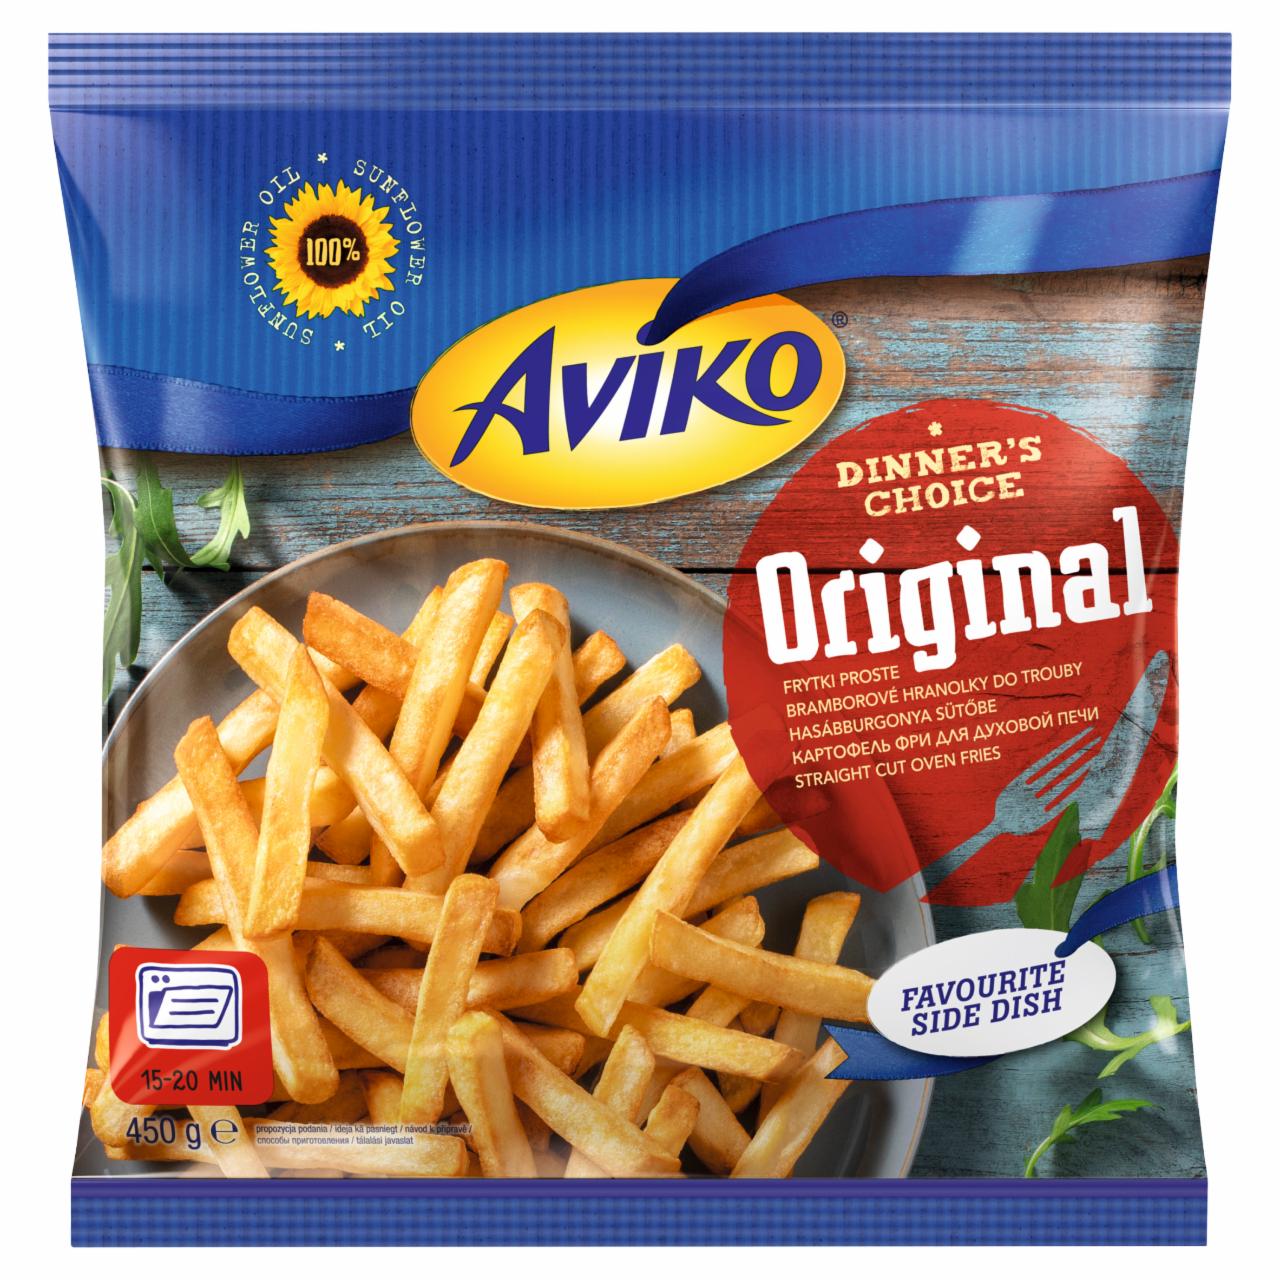 Képek - Aviko Original elősütött és gyorsfagyasztott hasábburgonya sütőbe 450 g